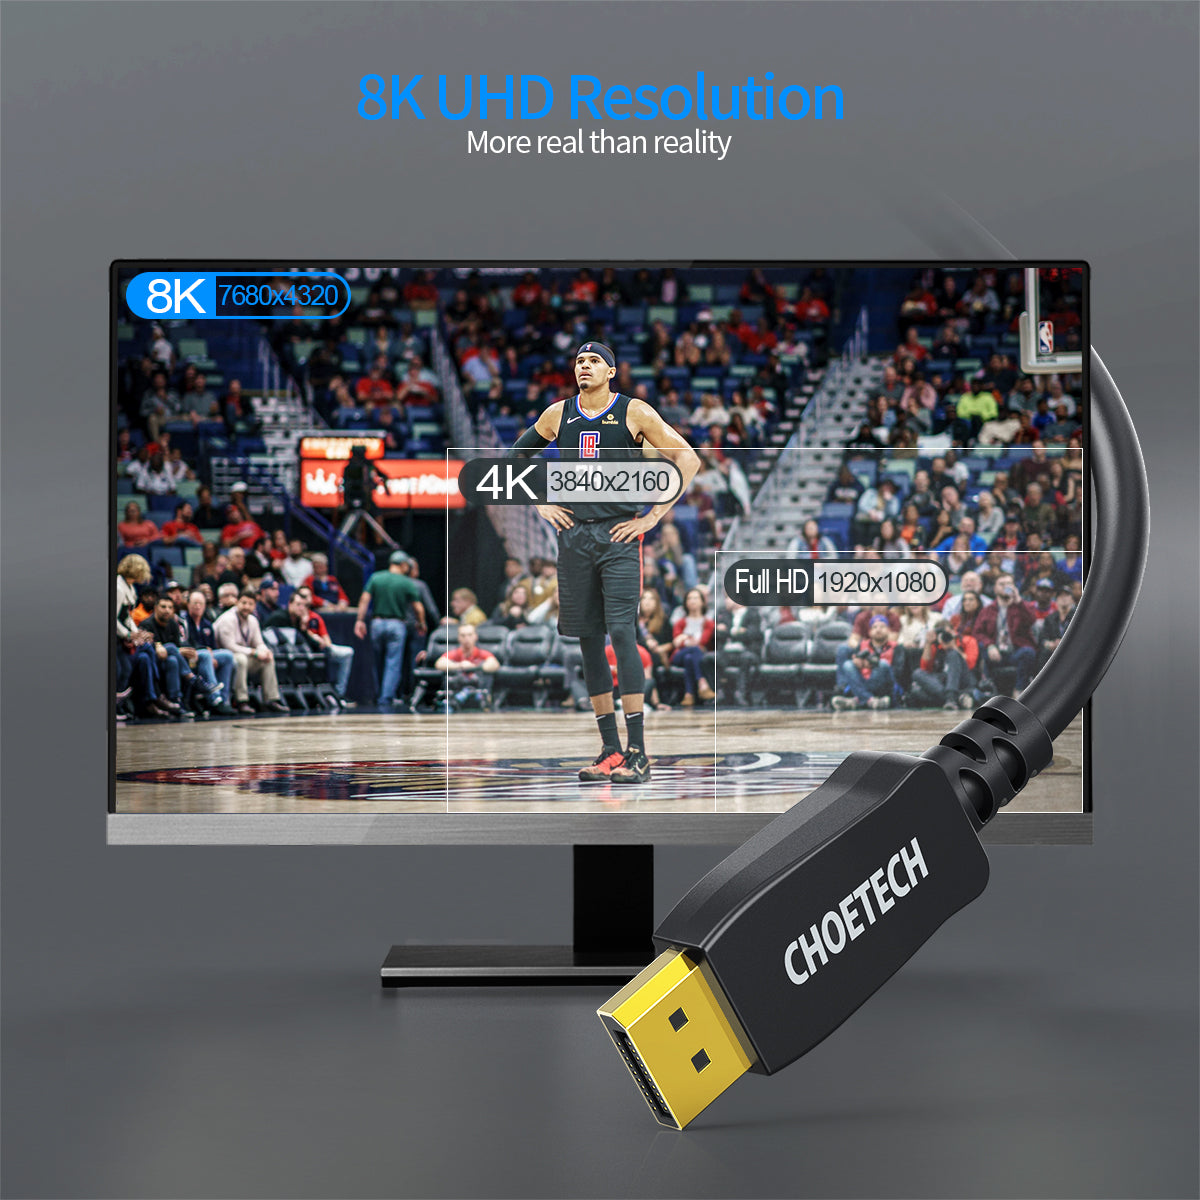 Câble DisplayPort XDD01 CHOETECH 8K, câble Displayport vers Displayport 2 m/2 m avec résolution 8 K 60 Hz